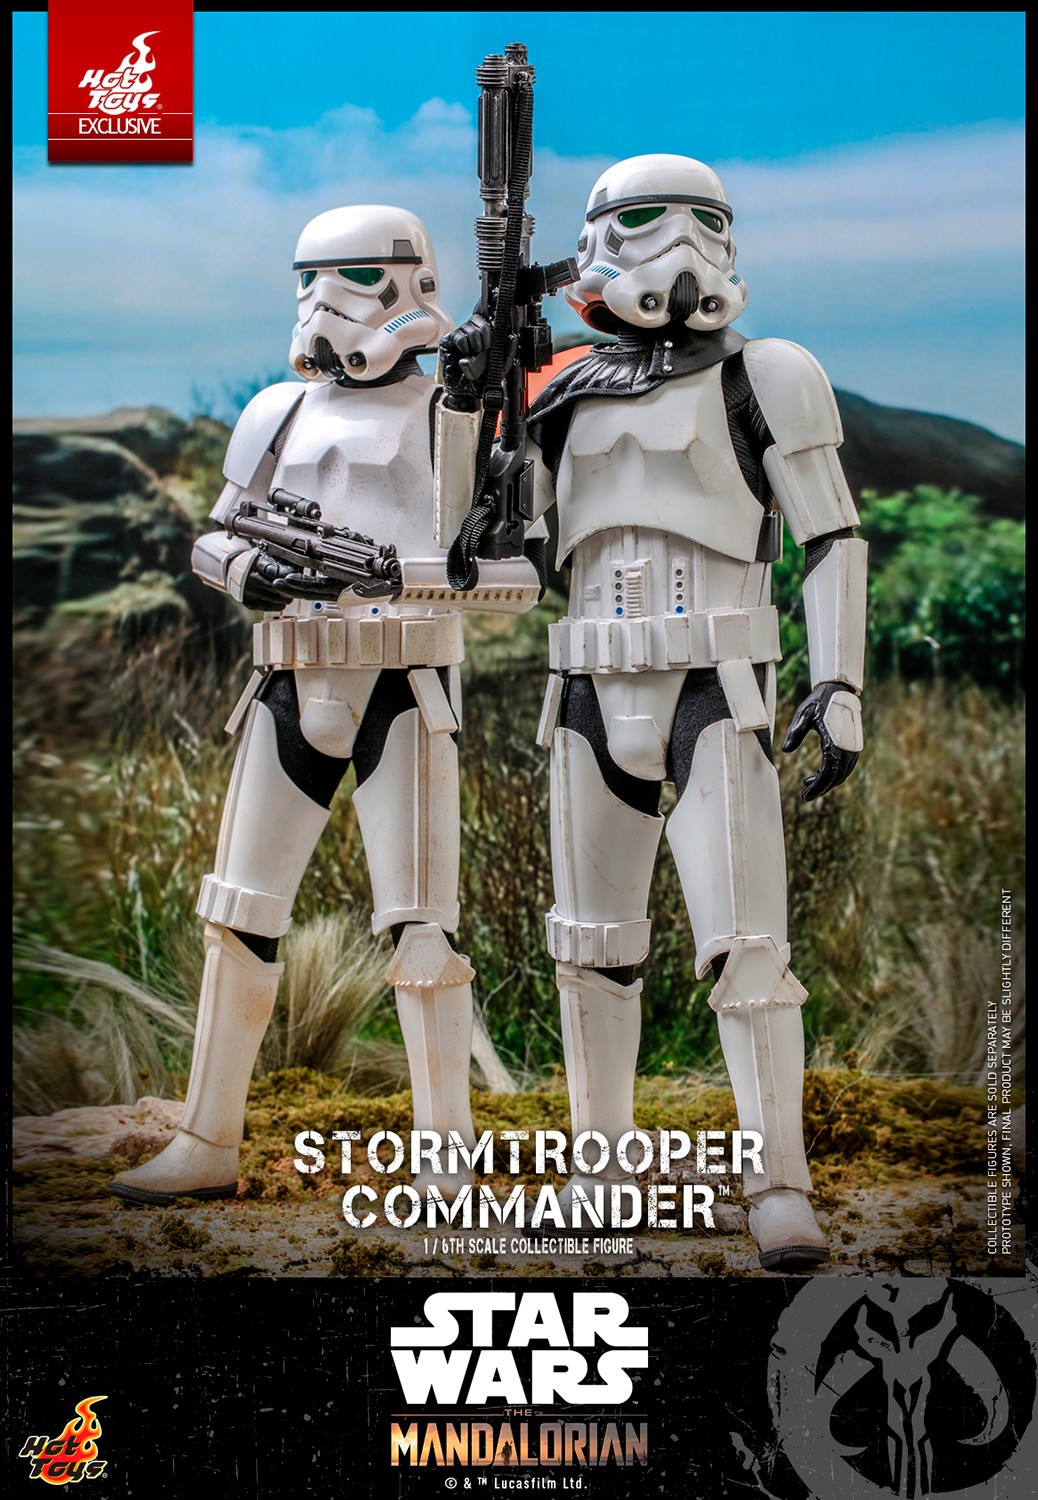 stormtrooper-commander_star-wars_gallery_63dab07c0b9cf.jpg